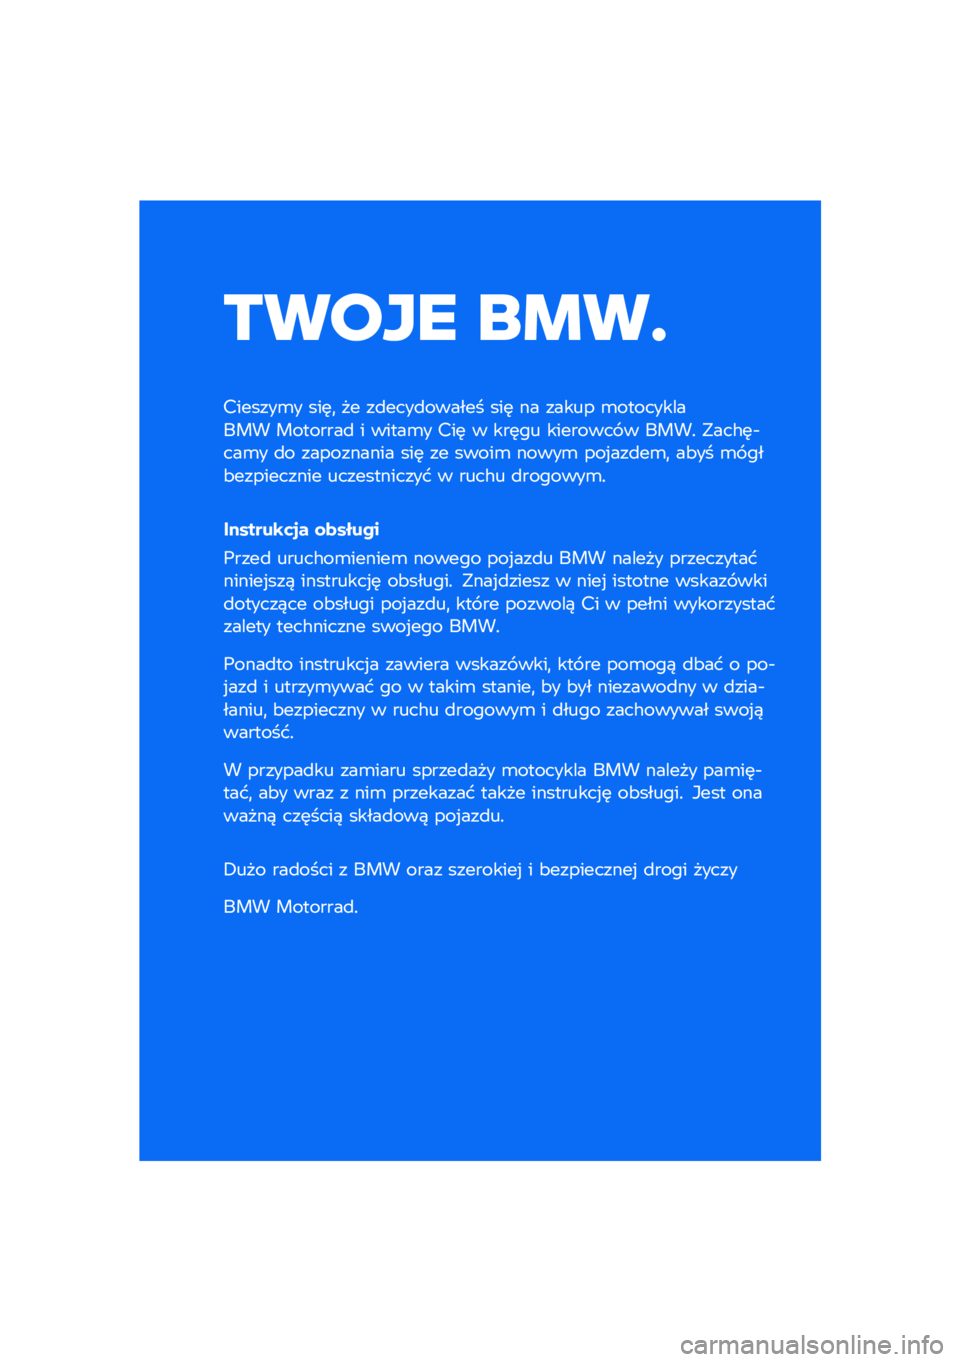 BMW MOTORRAD R NINE T URVAN G/S 2021  Instrukcja obsługi (in Polish) ����� ��\b��	
�������\b� ���	�
 �� ��
����
������ ���	 �� ����� �\b����������� ��������
 � �����\b� ���	 � ���	�� �������� �